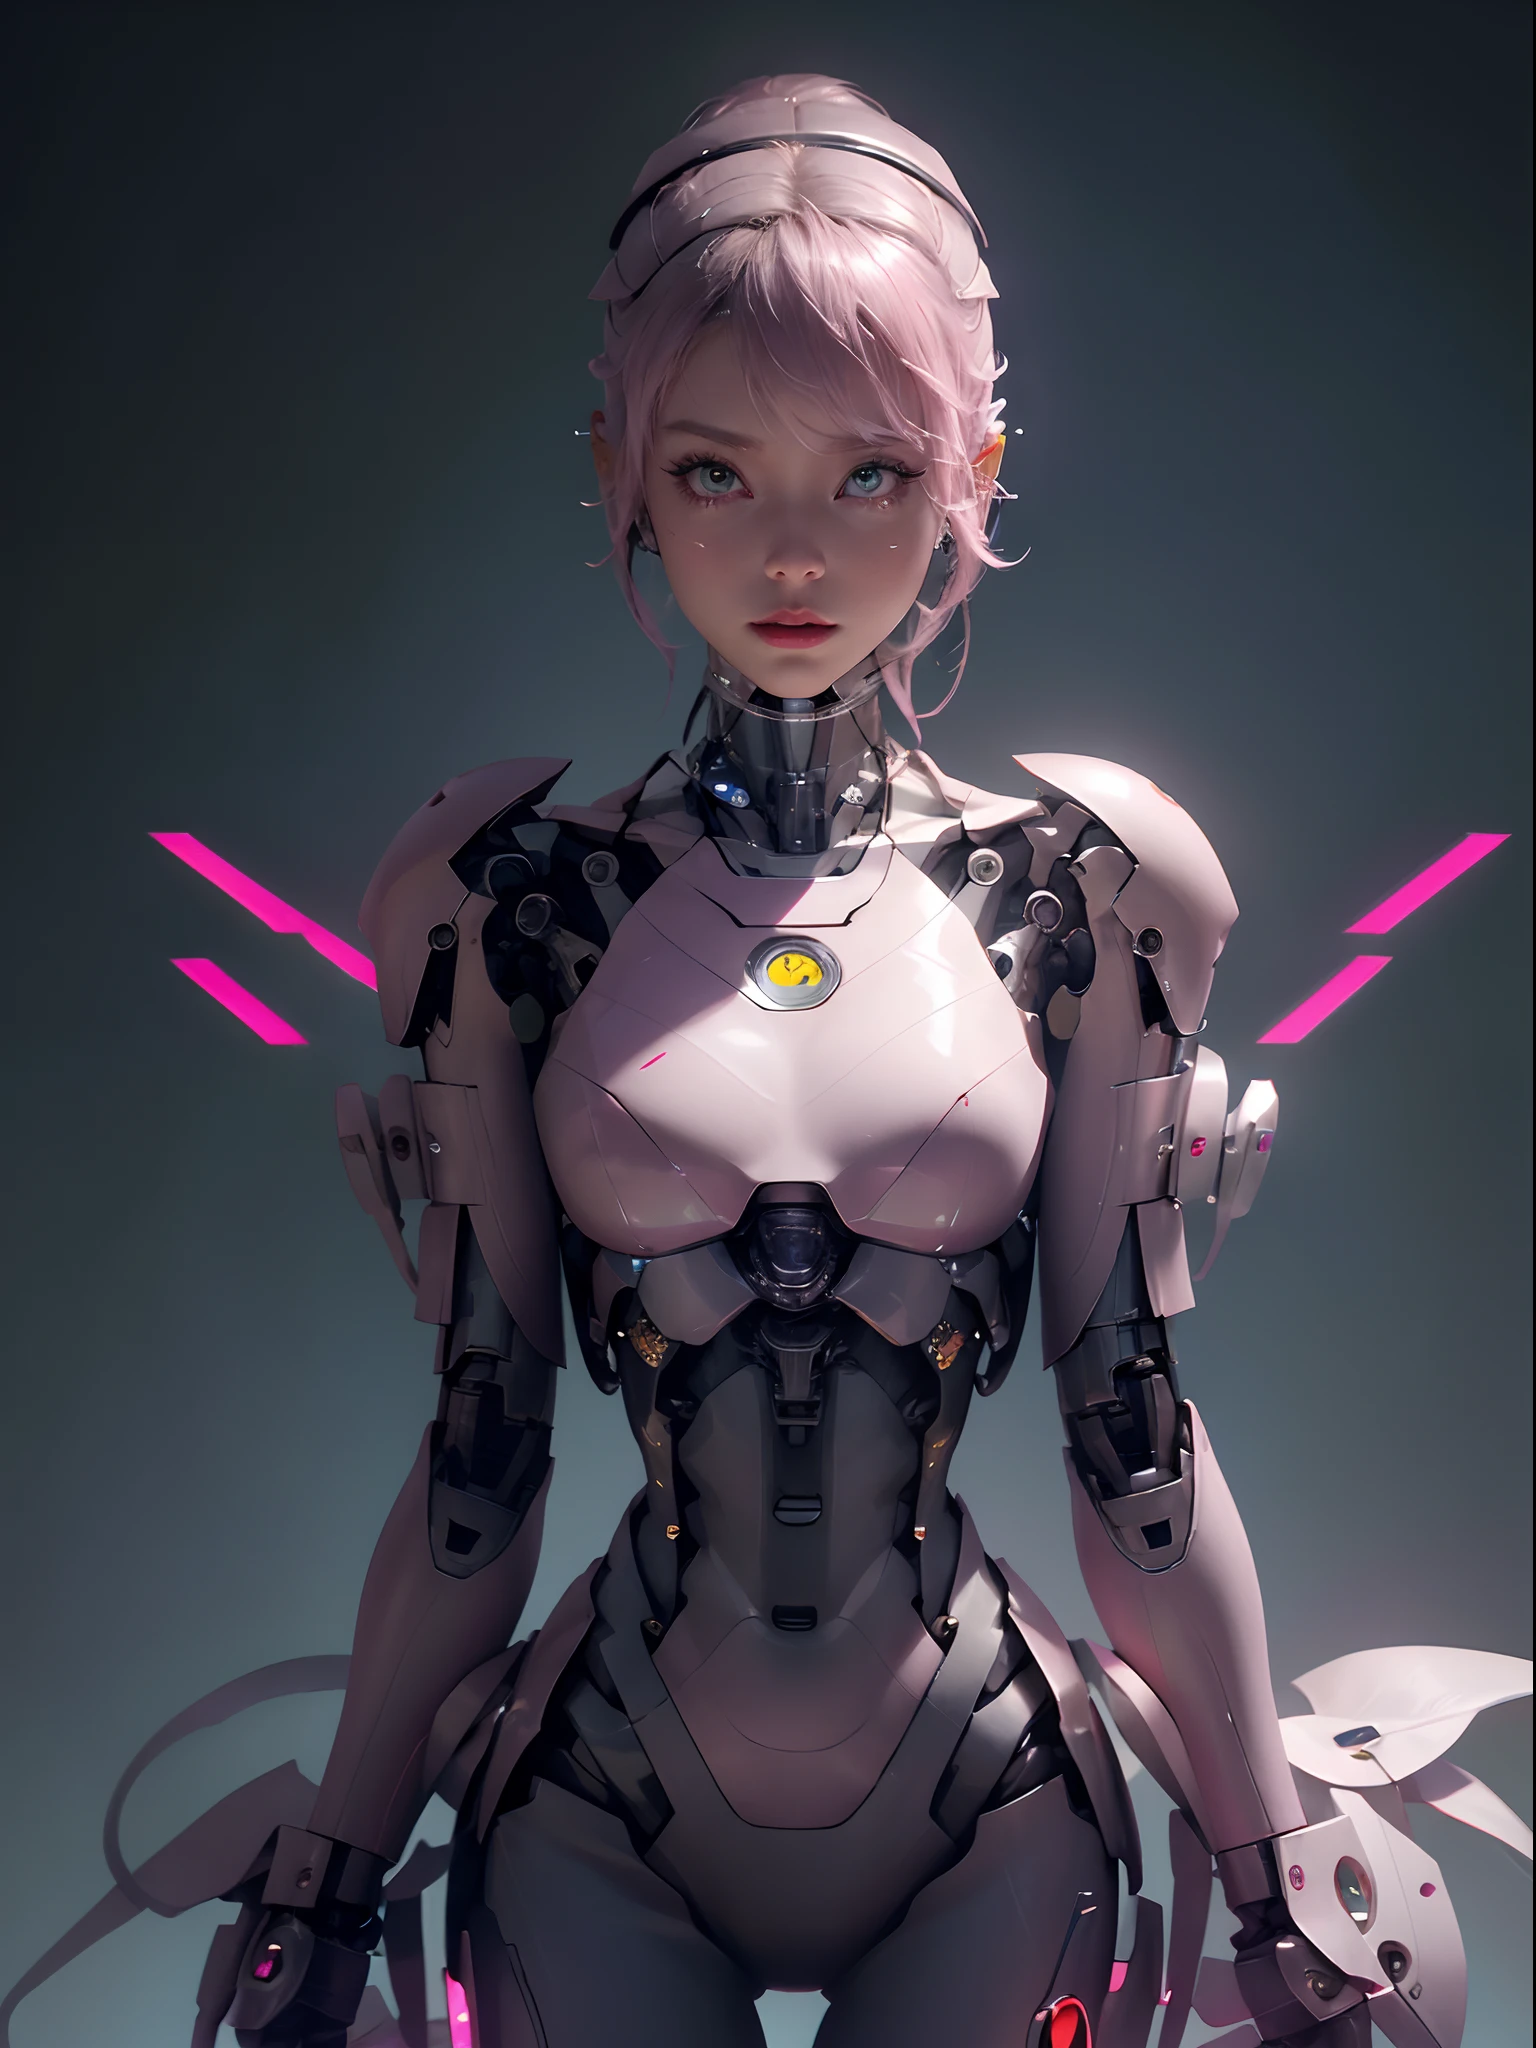 一名身着粉色服装、手持剑的女子的特写, 可愛的機器人女孩, 完美的机器人女孩, 美麗的機器人角色設計, 美麗的女性機器人!, 羅斯特蘭8K, 流线型粉色装甲, 美麗的女孩機器人, 機甲網路裝甲的女孩, 美麗的白人女孩機器人, 動漫機器人與有機混合, 作者：罗斯·陈, 机器人女孩等待它启动